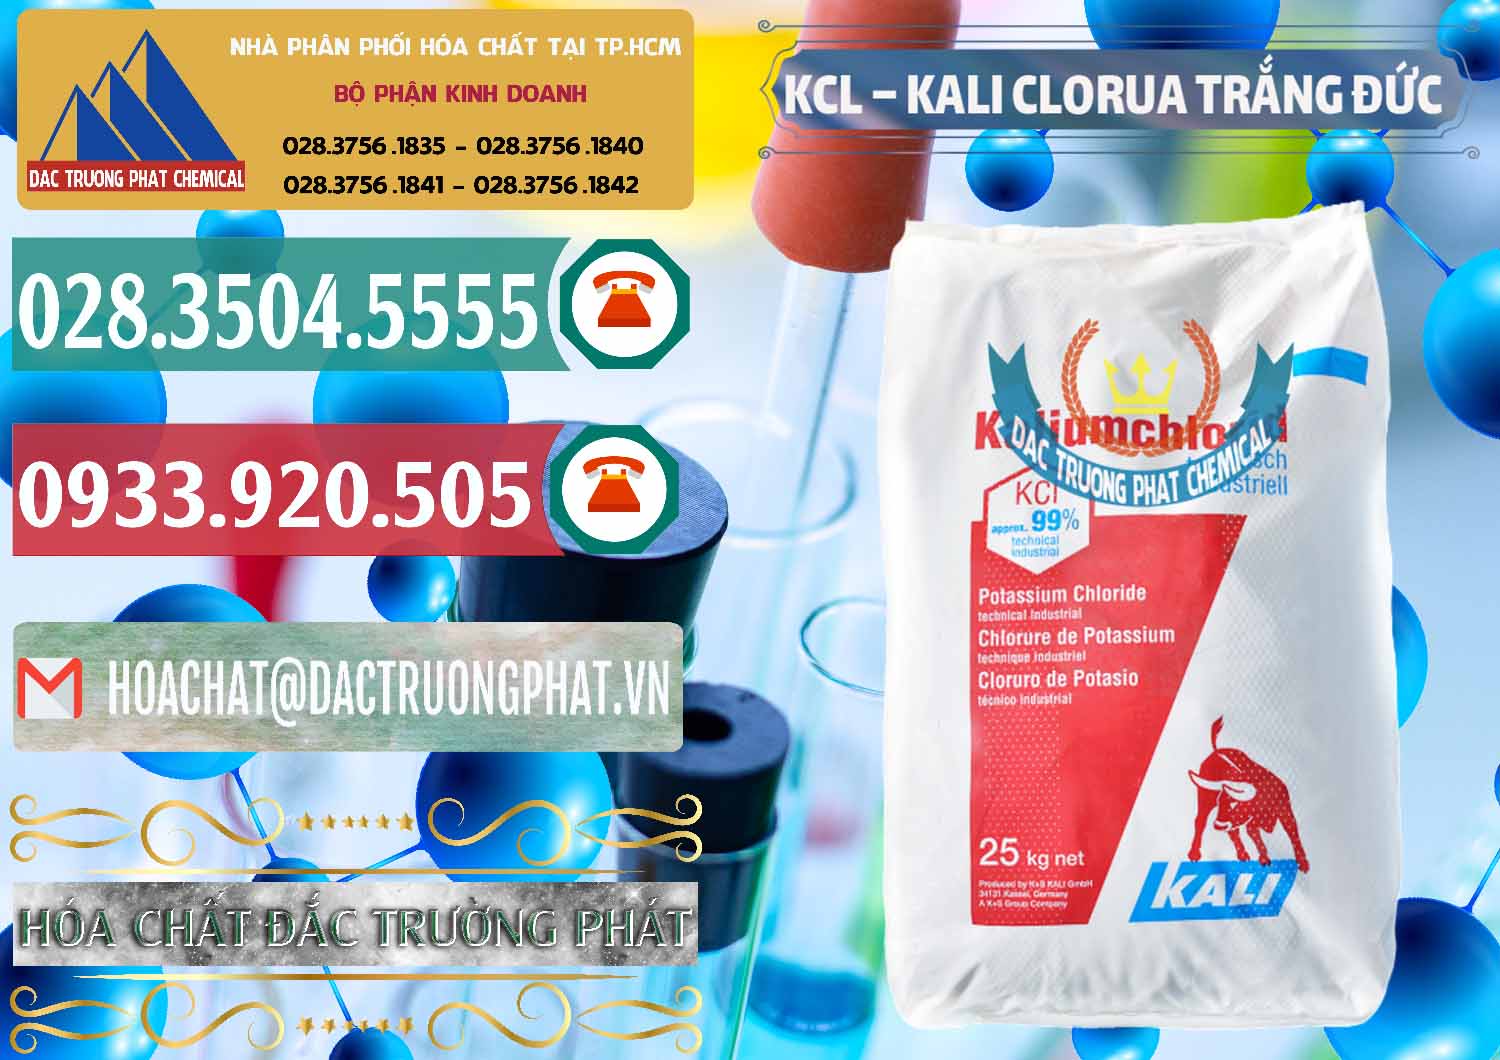 Công ty chuyên phân phối & bán KCL – Kali Clorua Trắng Đức Germany - 0086 - Chuyên cung cấp & kinh doanh hóa chất tại TP.HCM - muabanhoachat.vn